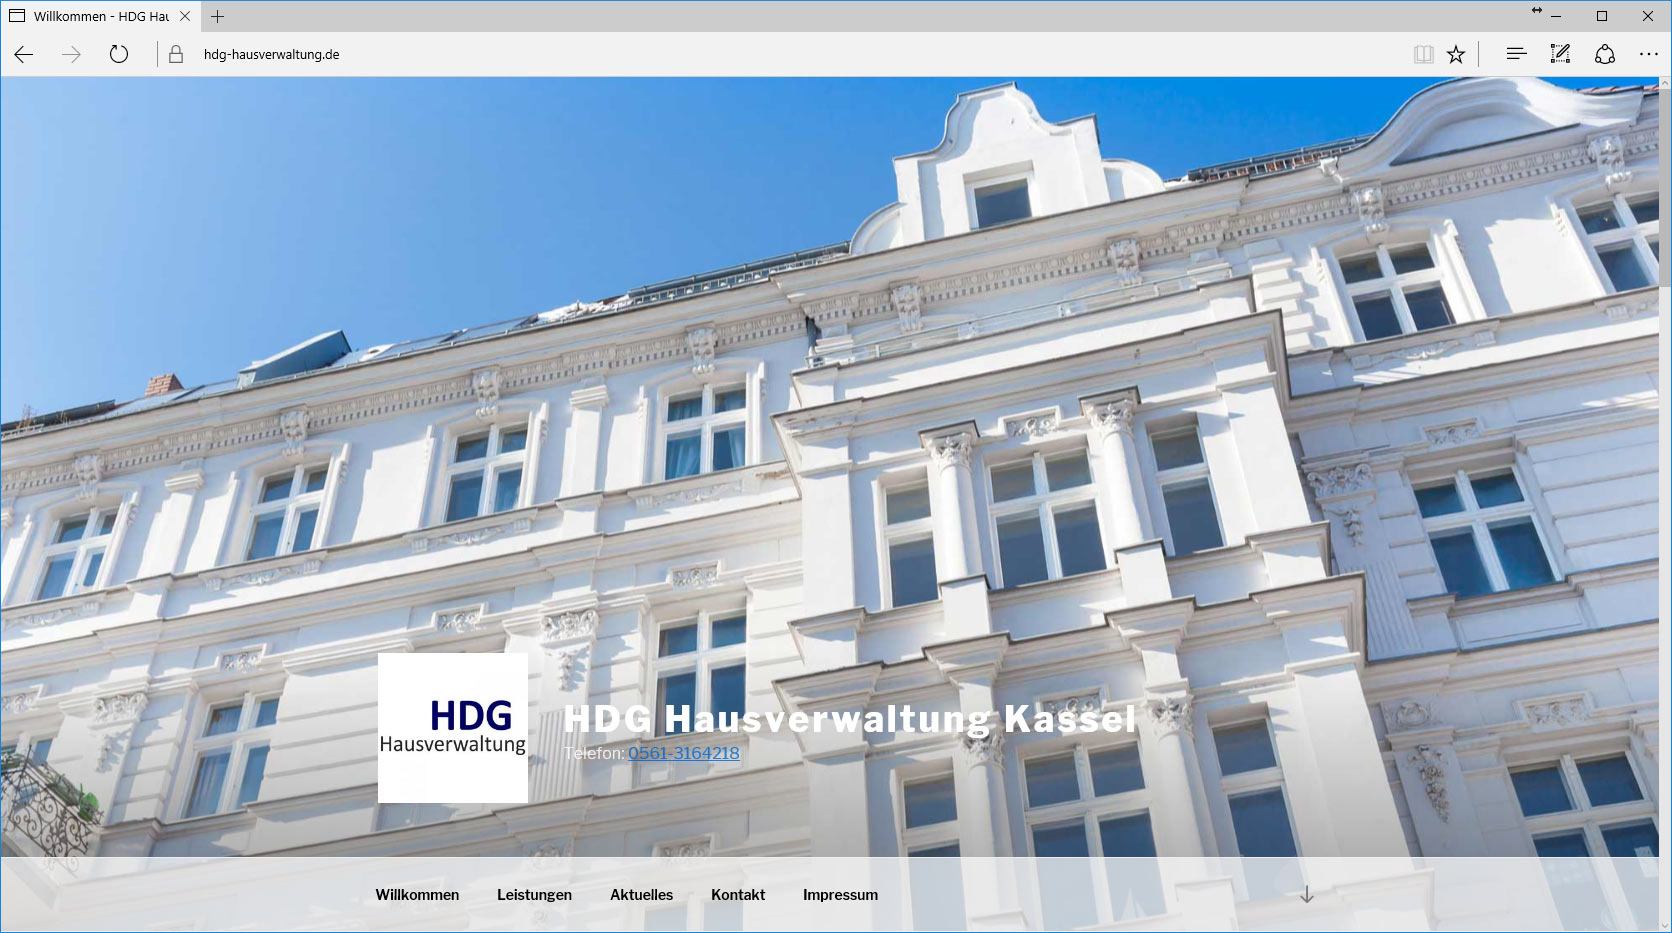 HDG Hausverwaltung